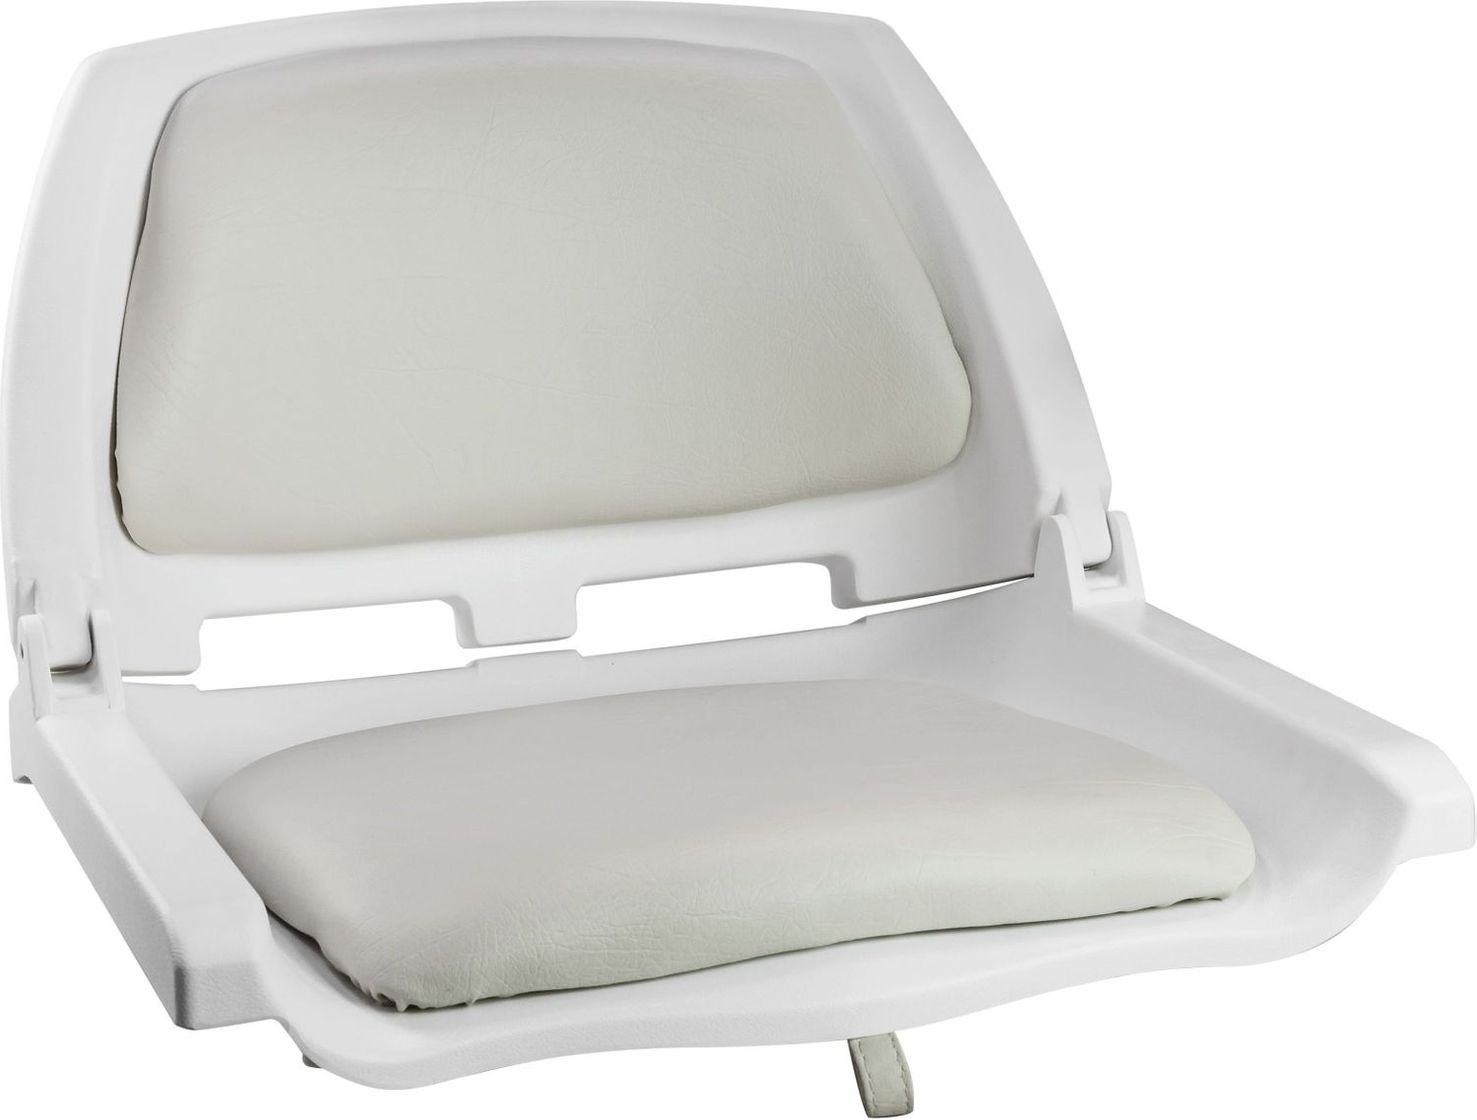 Кресло складное мягкое TRAVELER, цвет белый/серый (упаковка из 2 шт.) 1061104C_pkg_2 кресло складное мягкое traveler обивка камуфляжная ткань duck blind упаковка из 2 шт 1061108c pkg 2